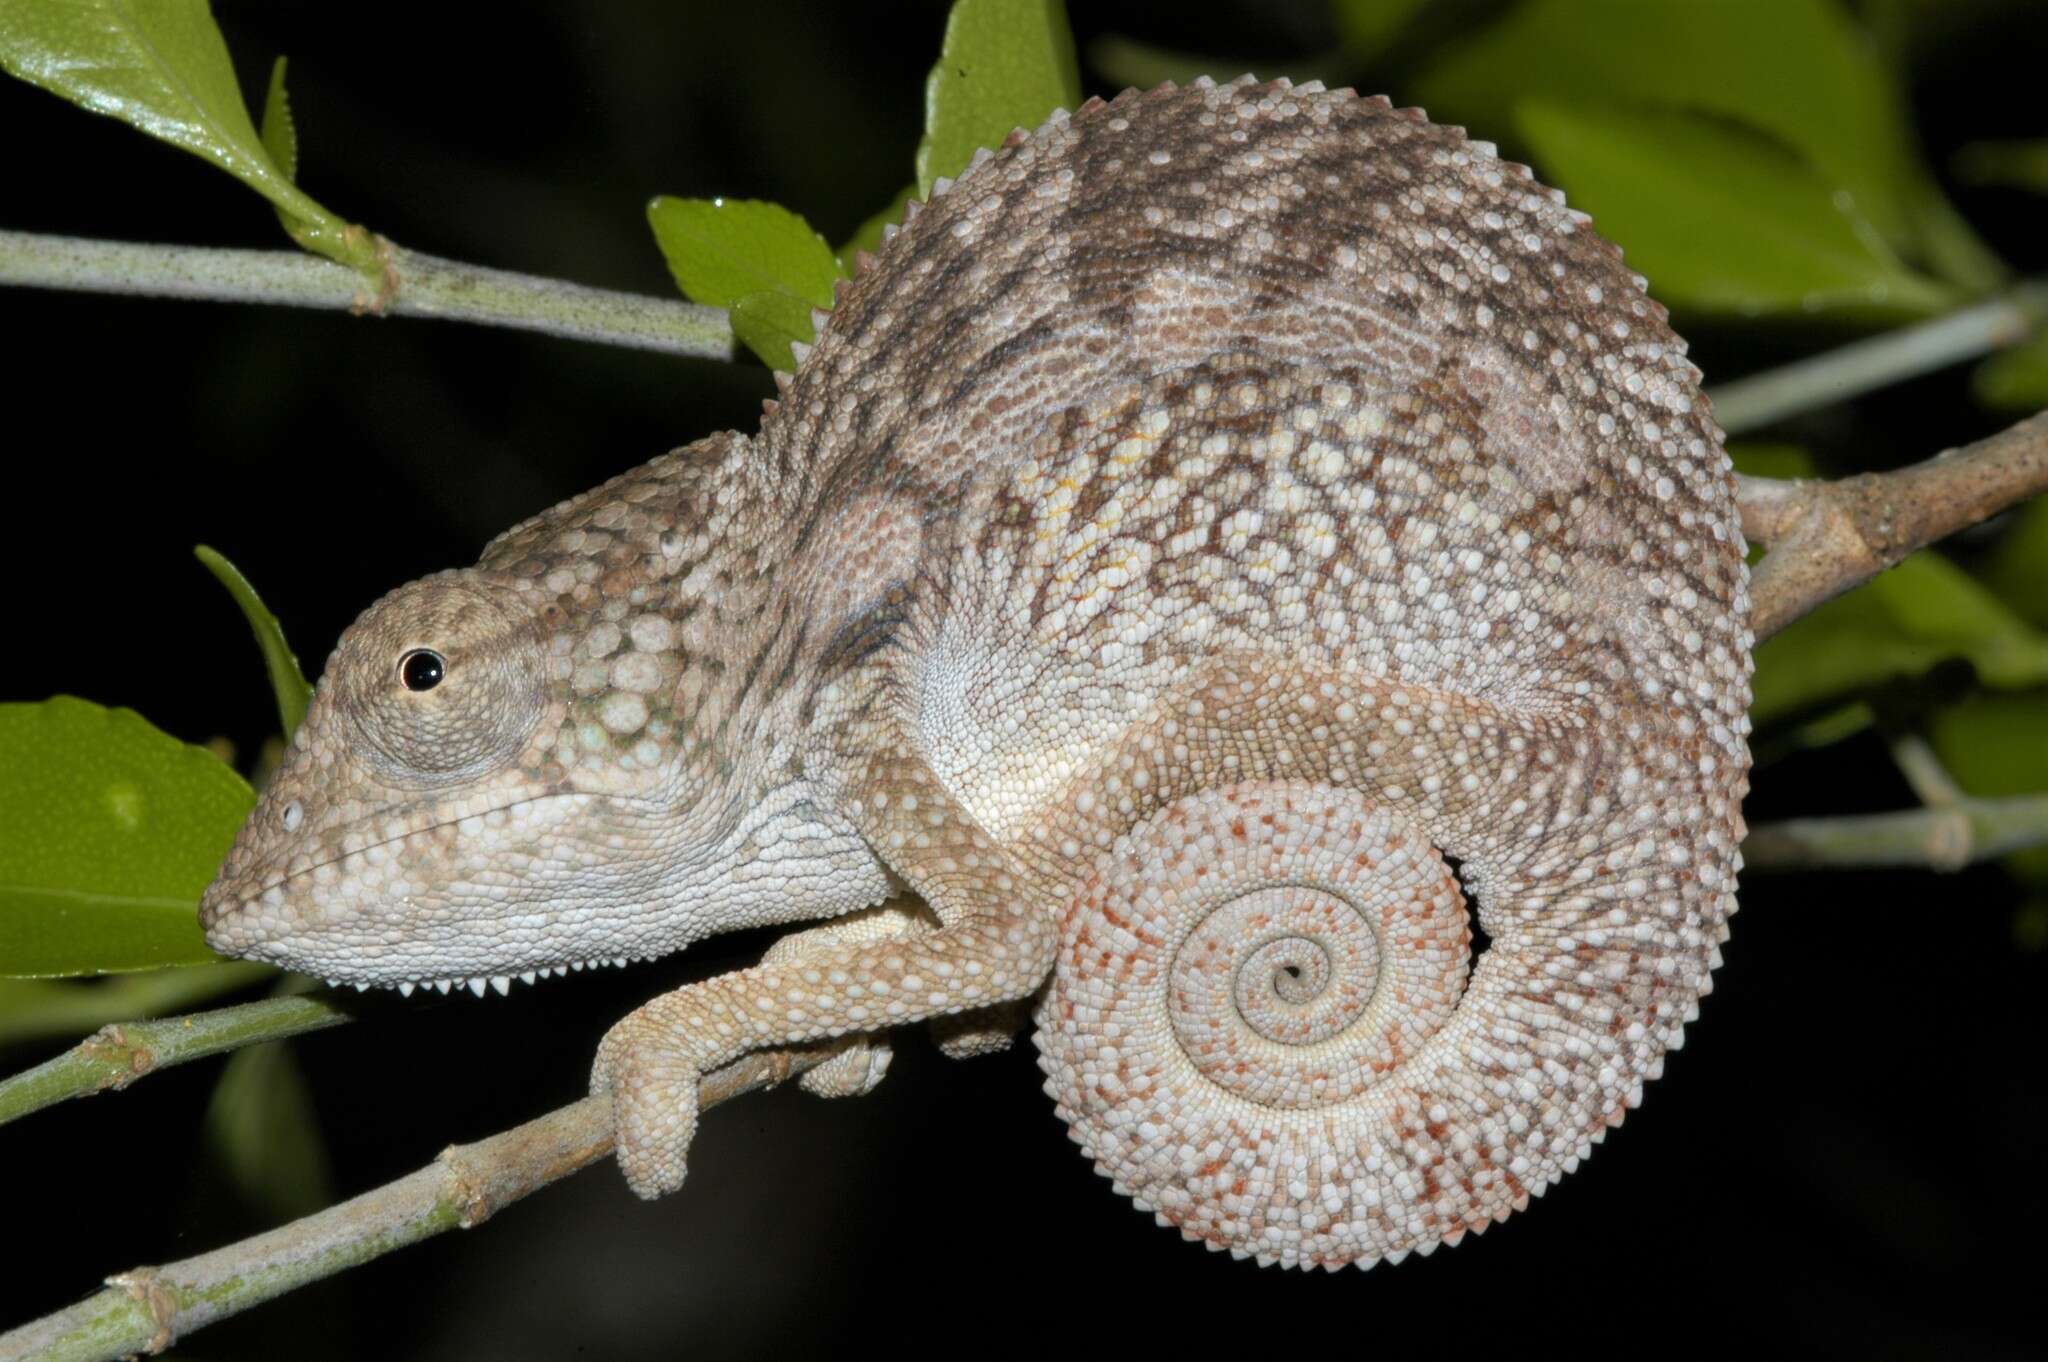 Image of Chameleon